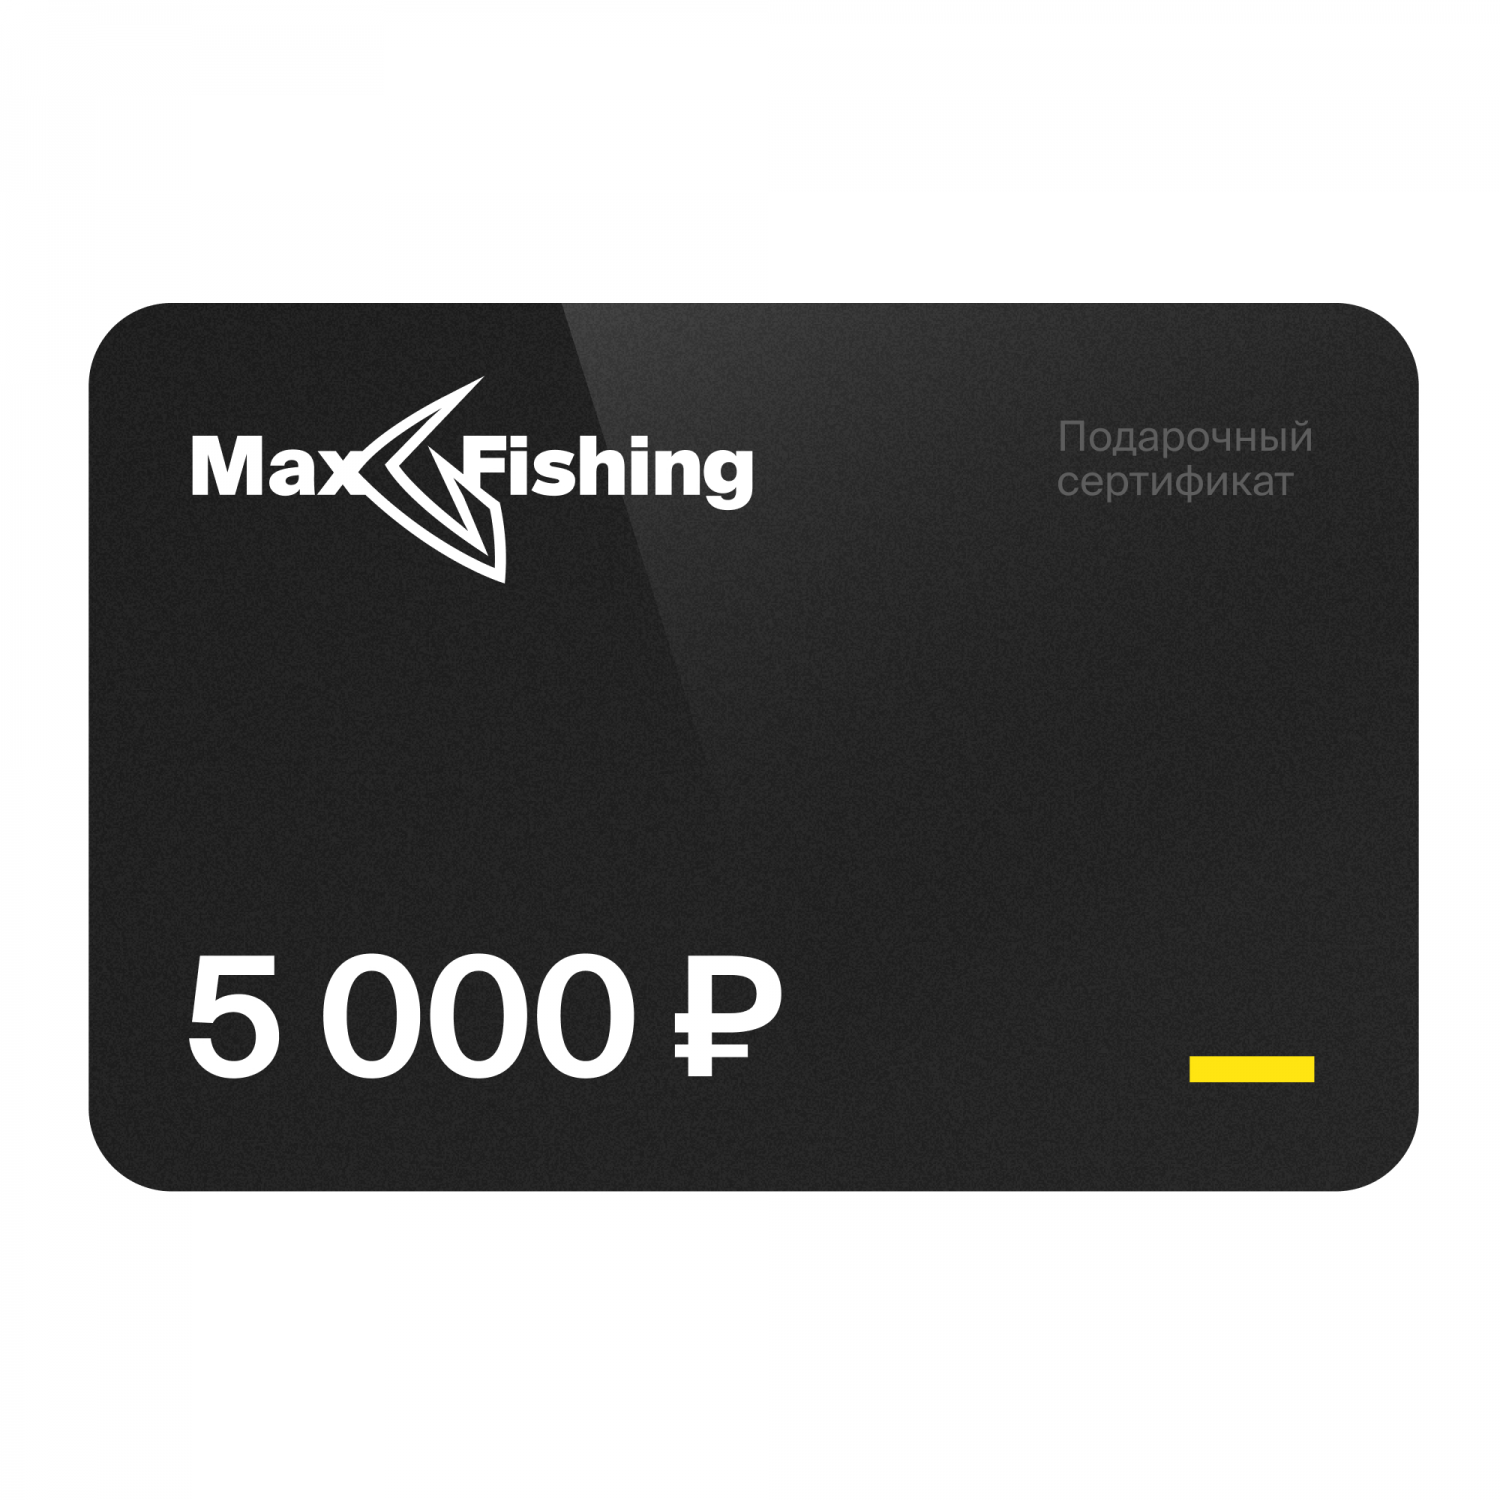 Подарочный сертификат MaxFishing 5 000 ₽ подарочный сертификат mr right на 5 000 рублей